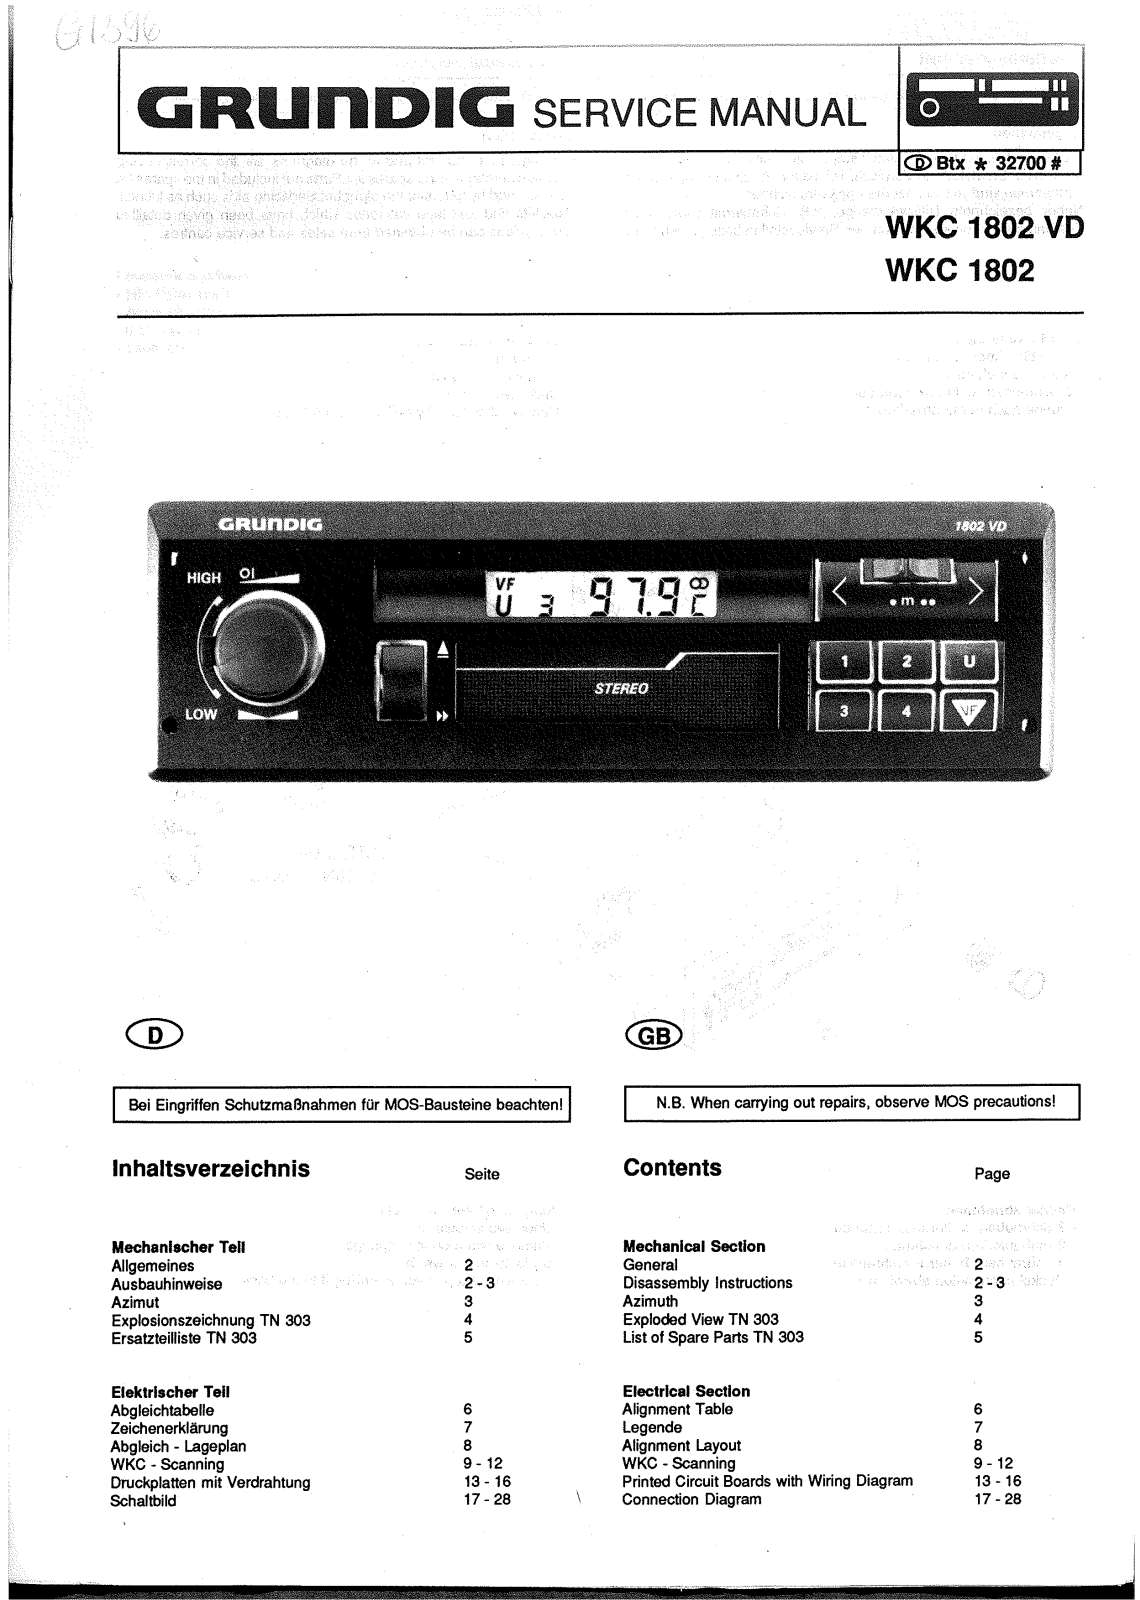 Grundig WKC-1802-VD, WKC-1802 Schematic